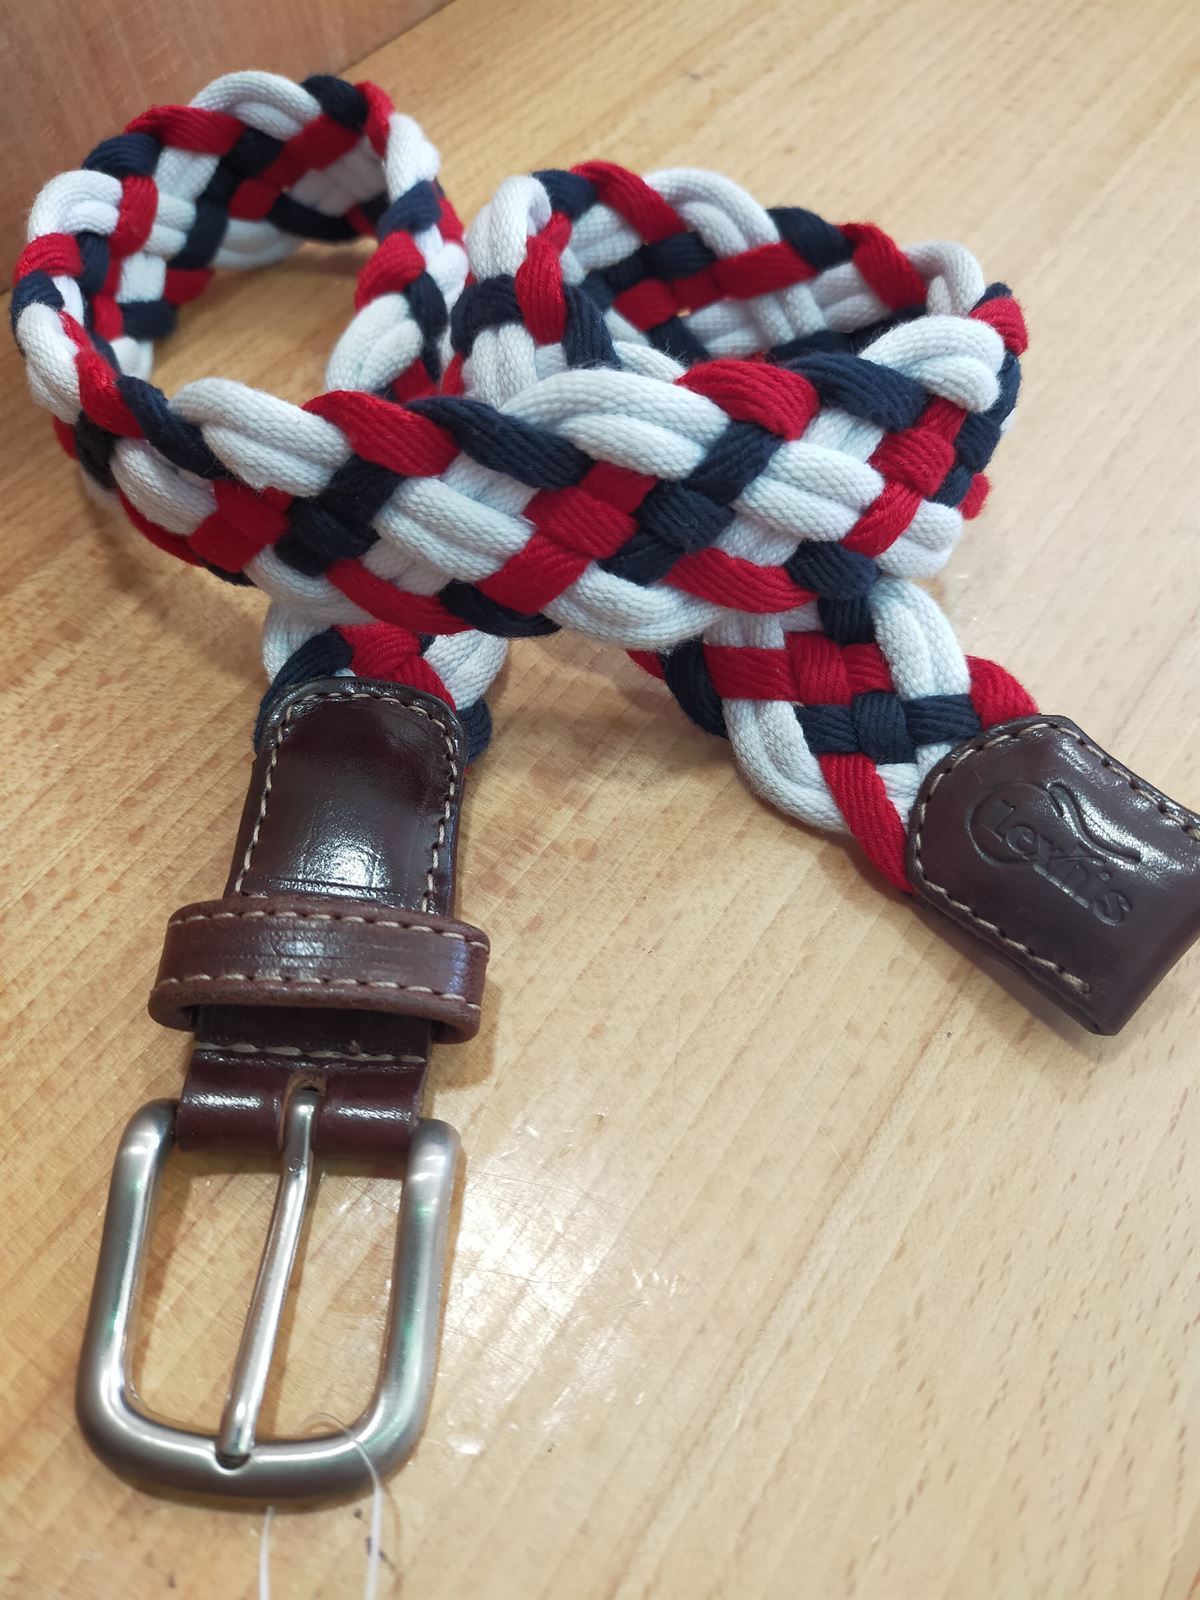 Cinturón LEXHIS algodón trenzado, marino/blanco/rojo TALLA 60 cm - Imagen 1